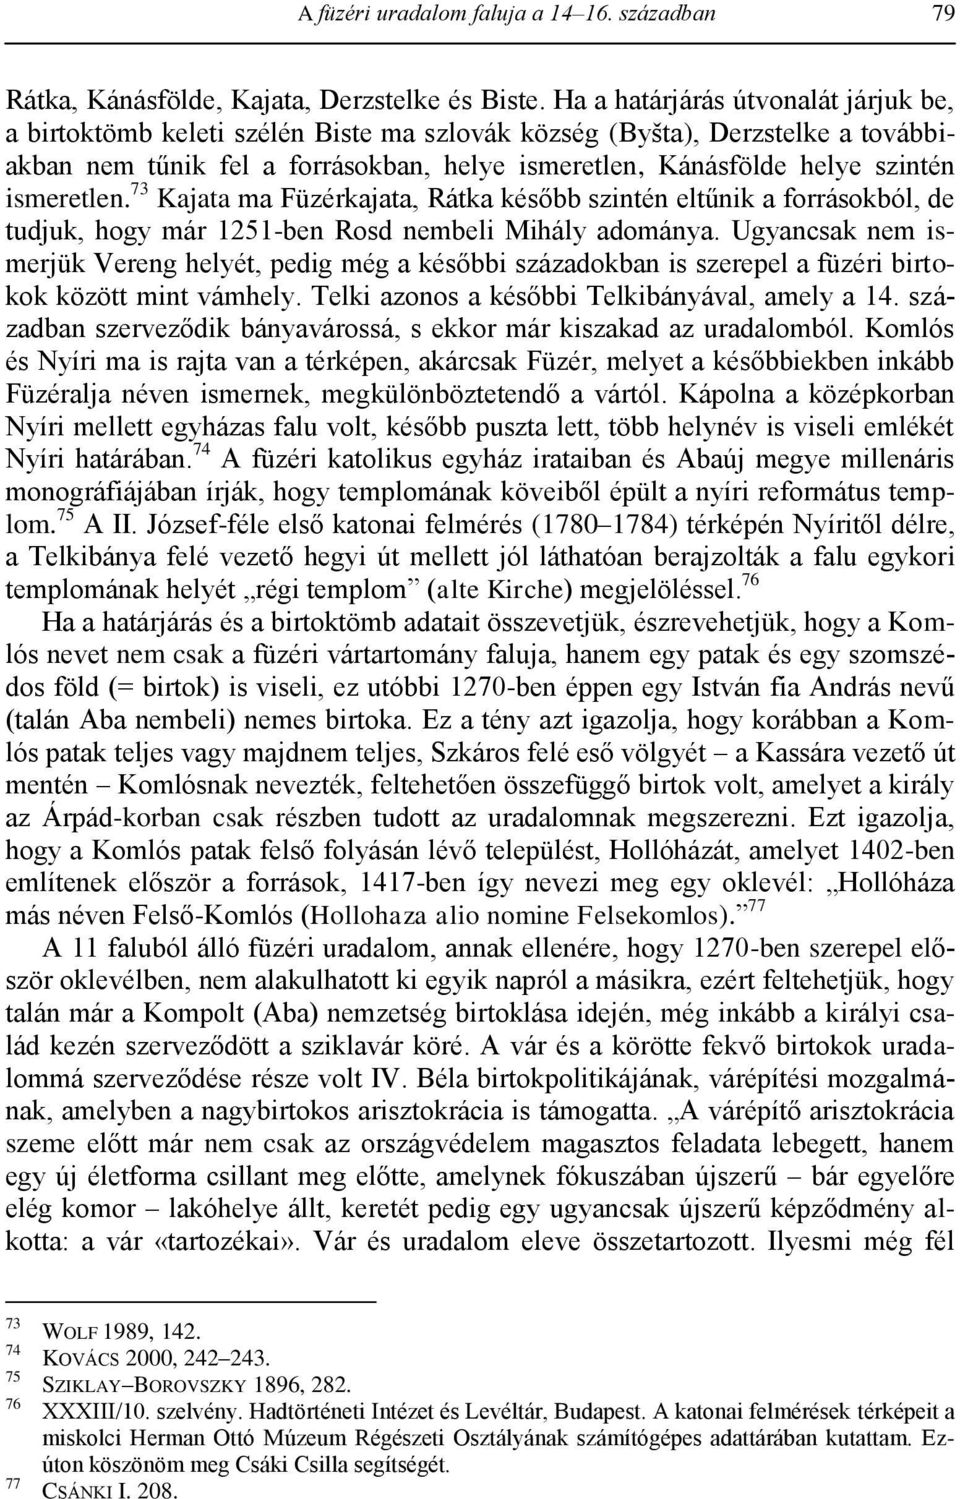 ismeretlen. 73 Kajata ma Füzérkajata, Rátka később szintén eltűnik a forrásokból, de tudjuk, hogy már 1251-ben Rosd nembeli Mihály adománya.